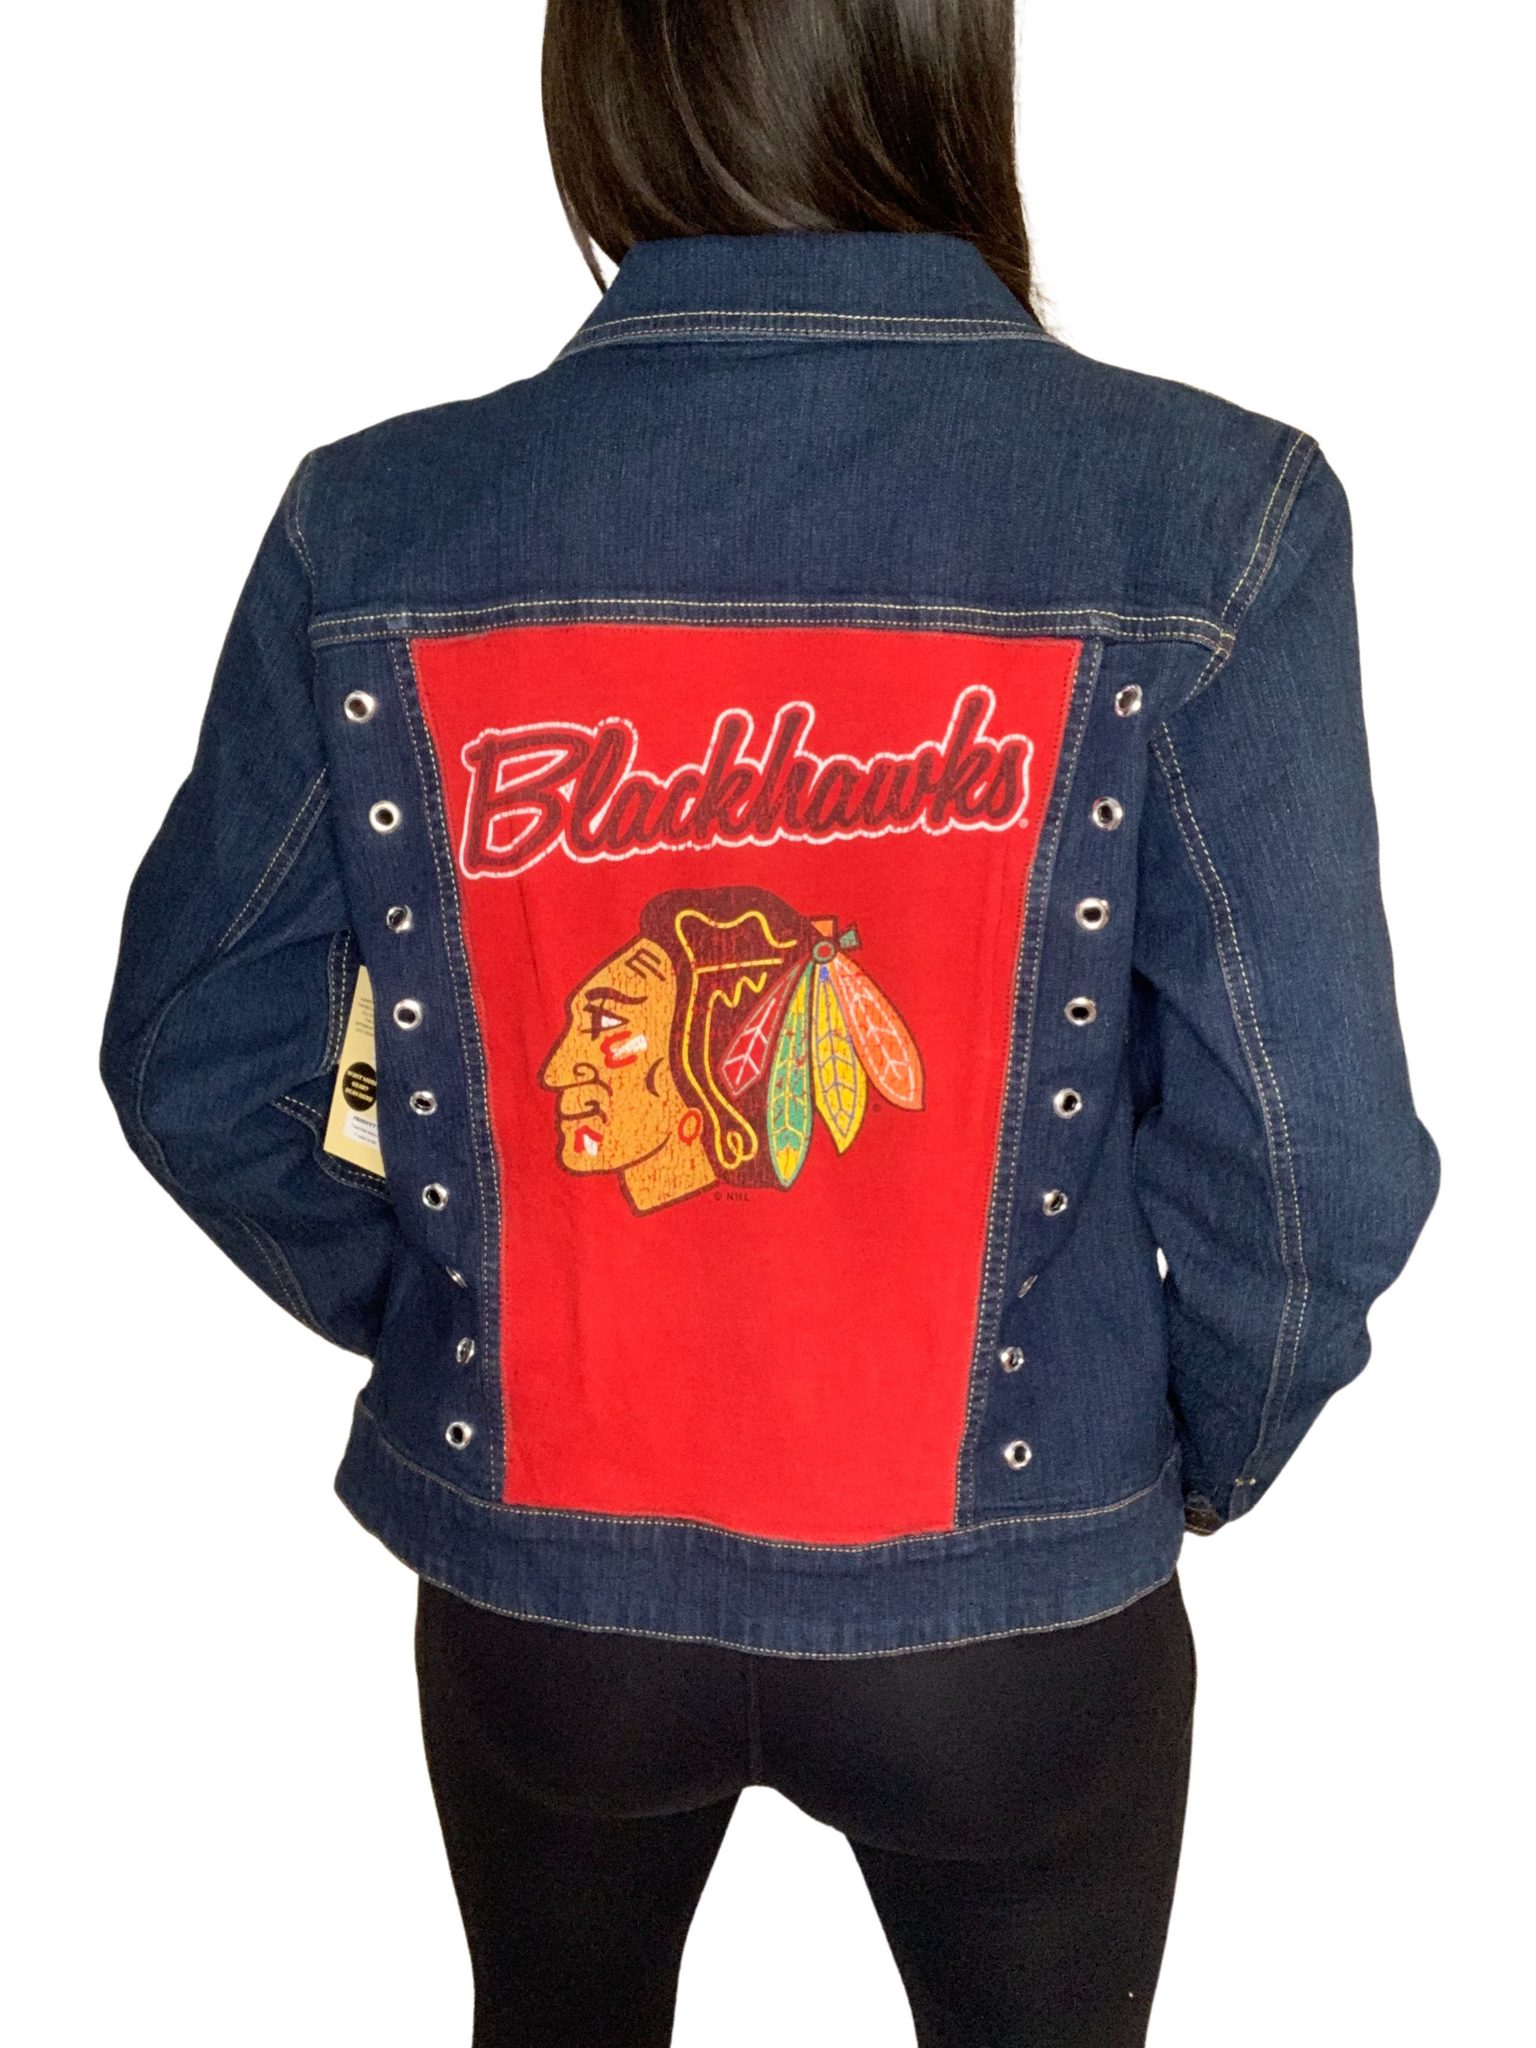 Chicago Blackhawks painted denim jacket!